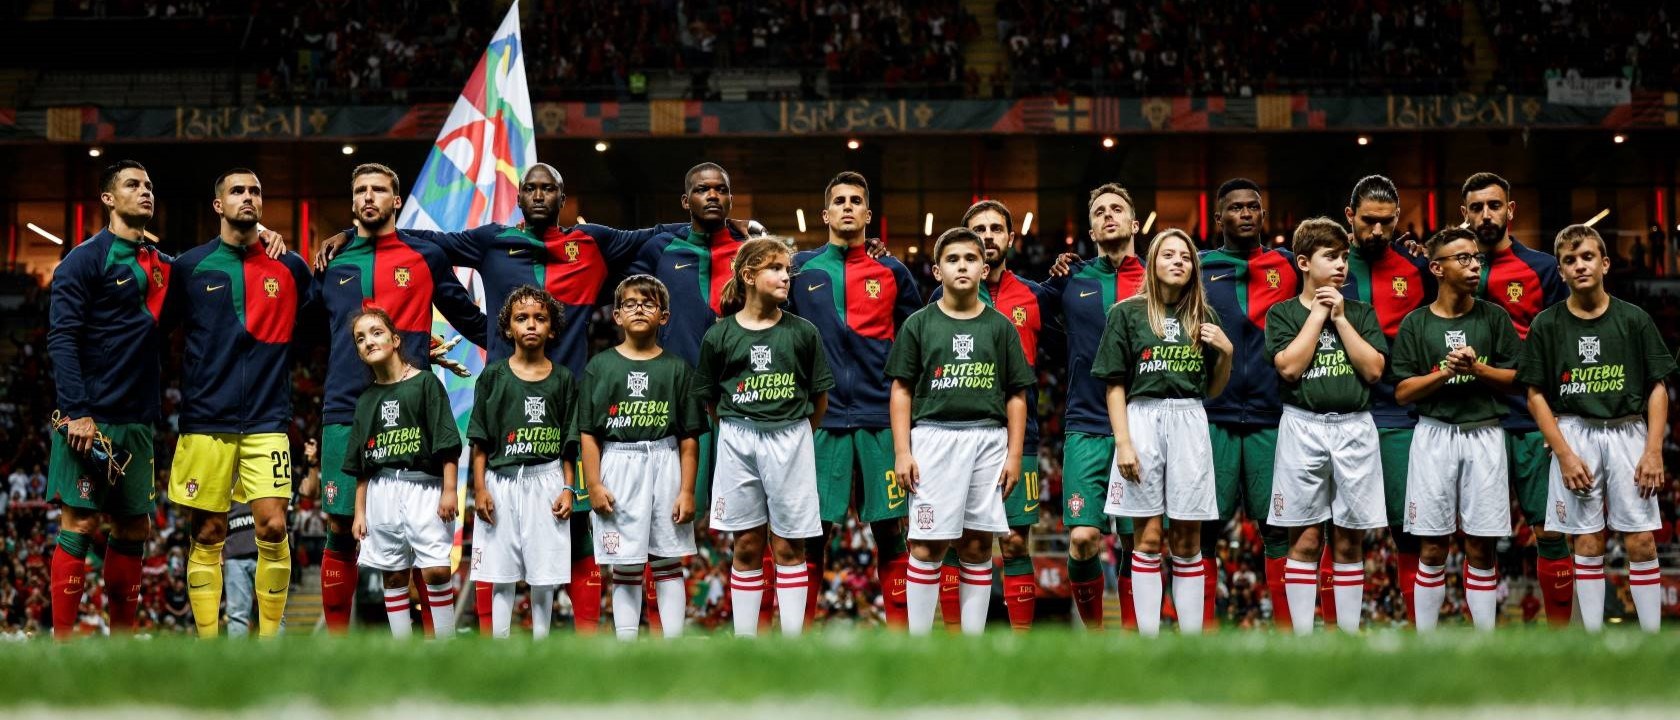 Quando é que Portugal joga no Campeonato do Mundo?